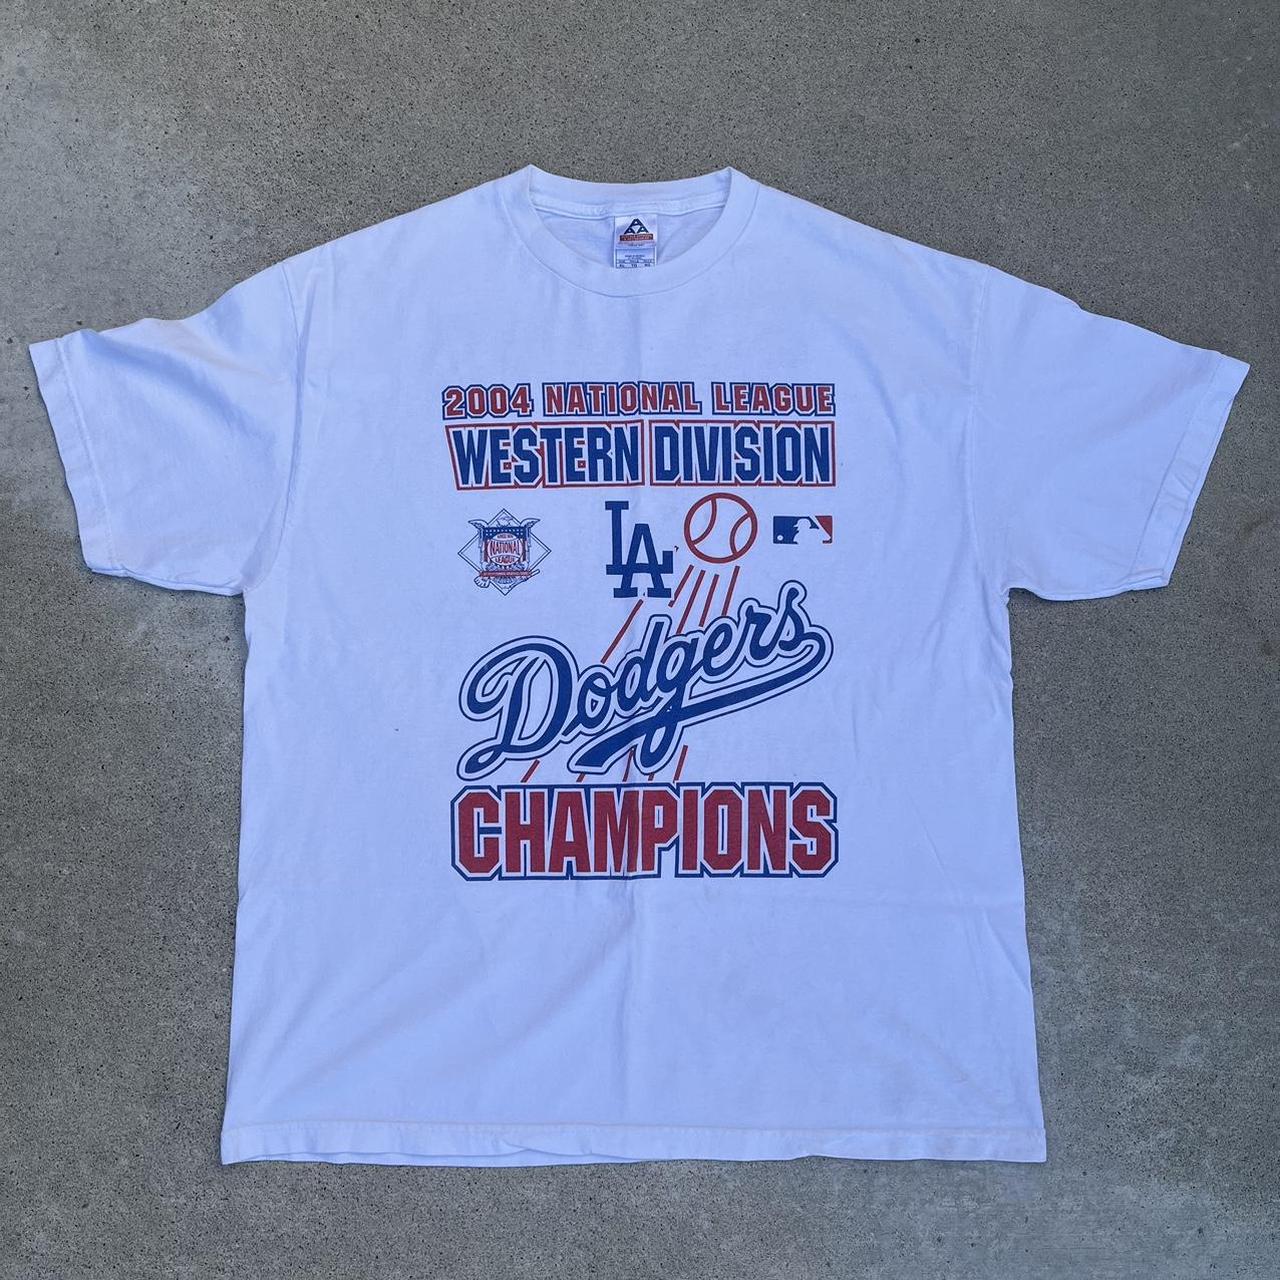 Made in USA Dodgers World Series Shirt, Shirt is a - Depop